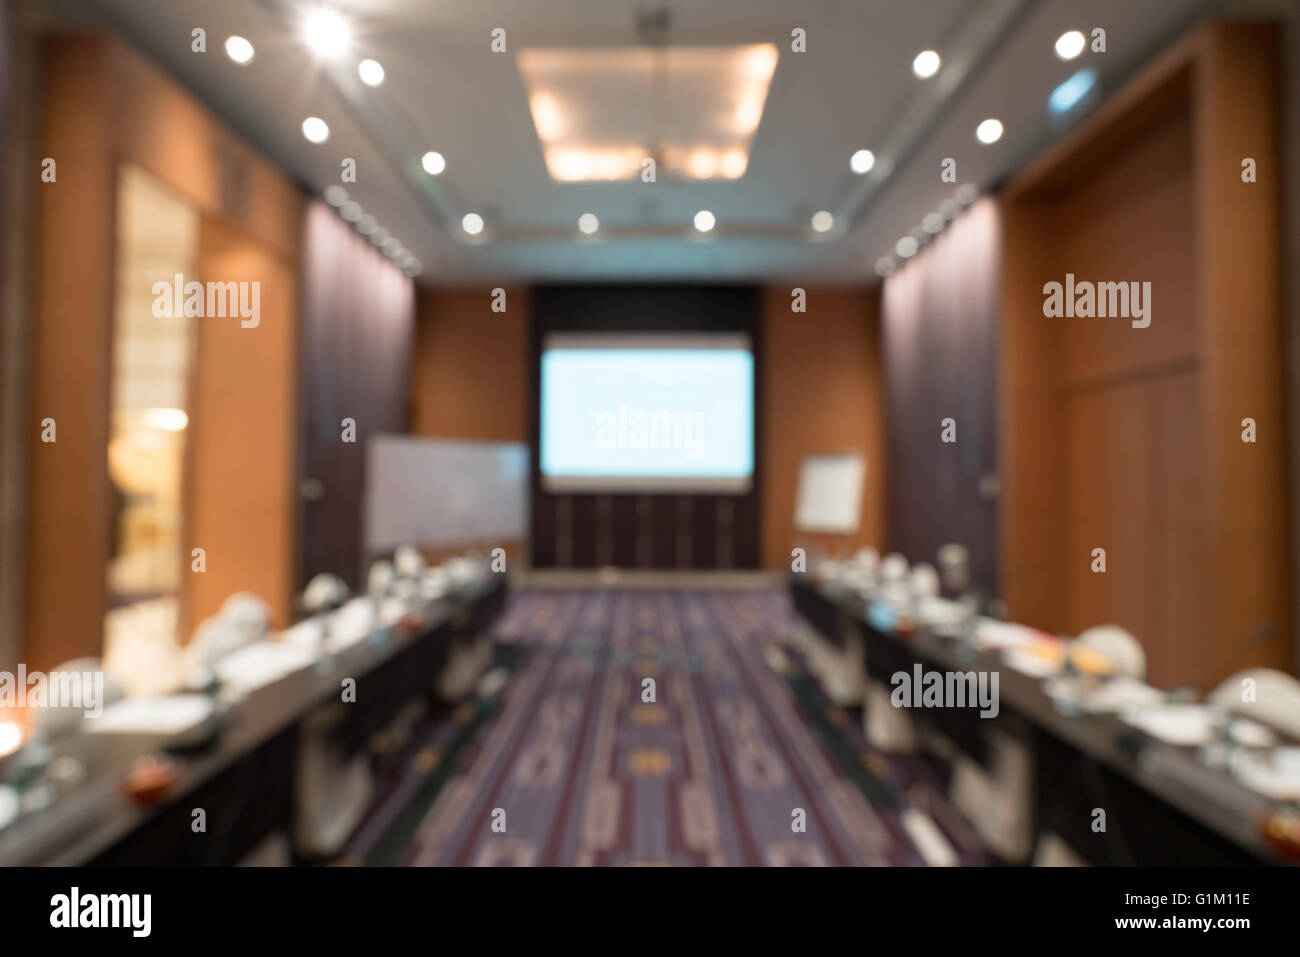 Sfocare lo sfondo immagine della riunione o sala conferenze Foto Stock